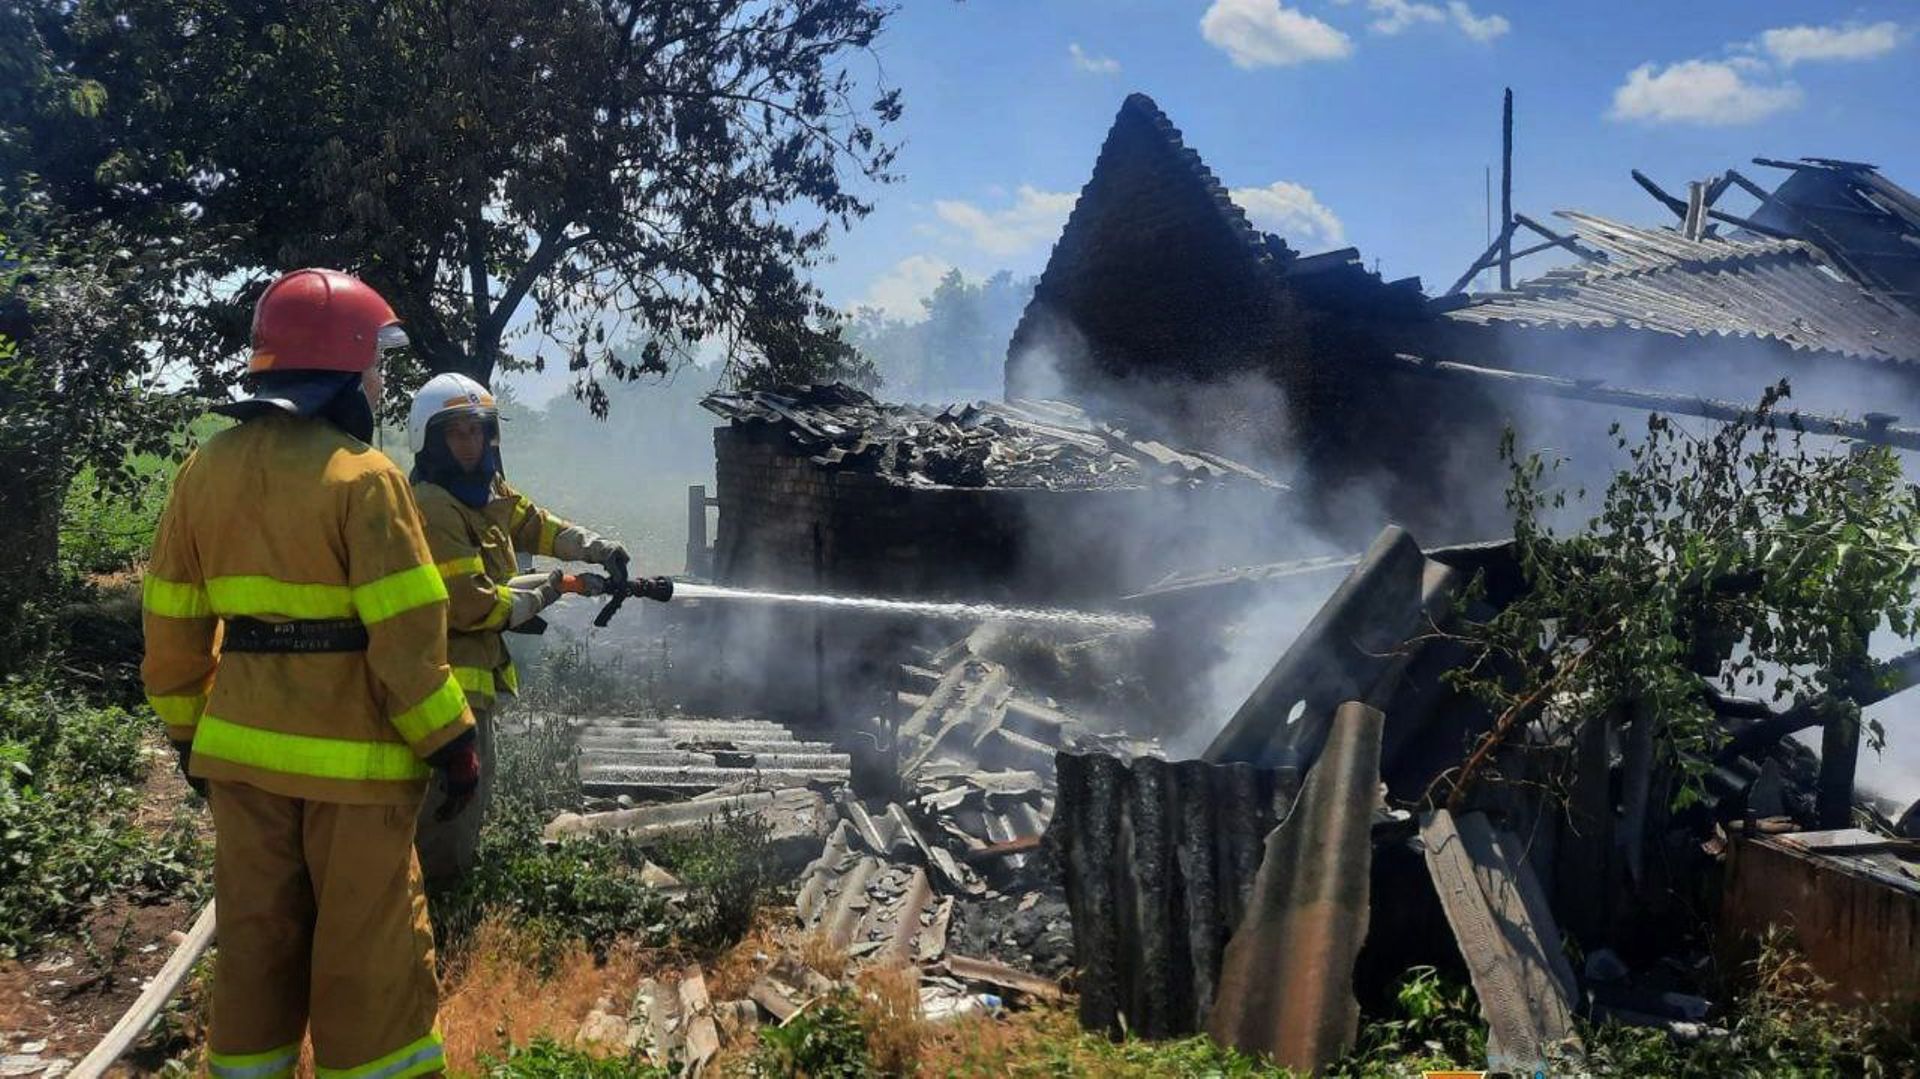 Cette photo distribuée par le service d’urgence ukrainien le 20 juillet 2022 montre des pompiers en train d’arroser une maison après un bombardement dans la région de Mykolaiv.